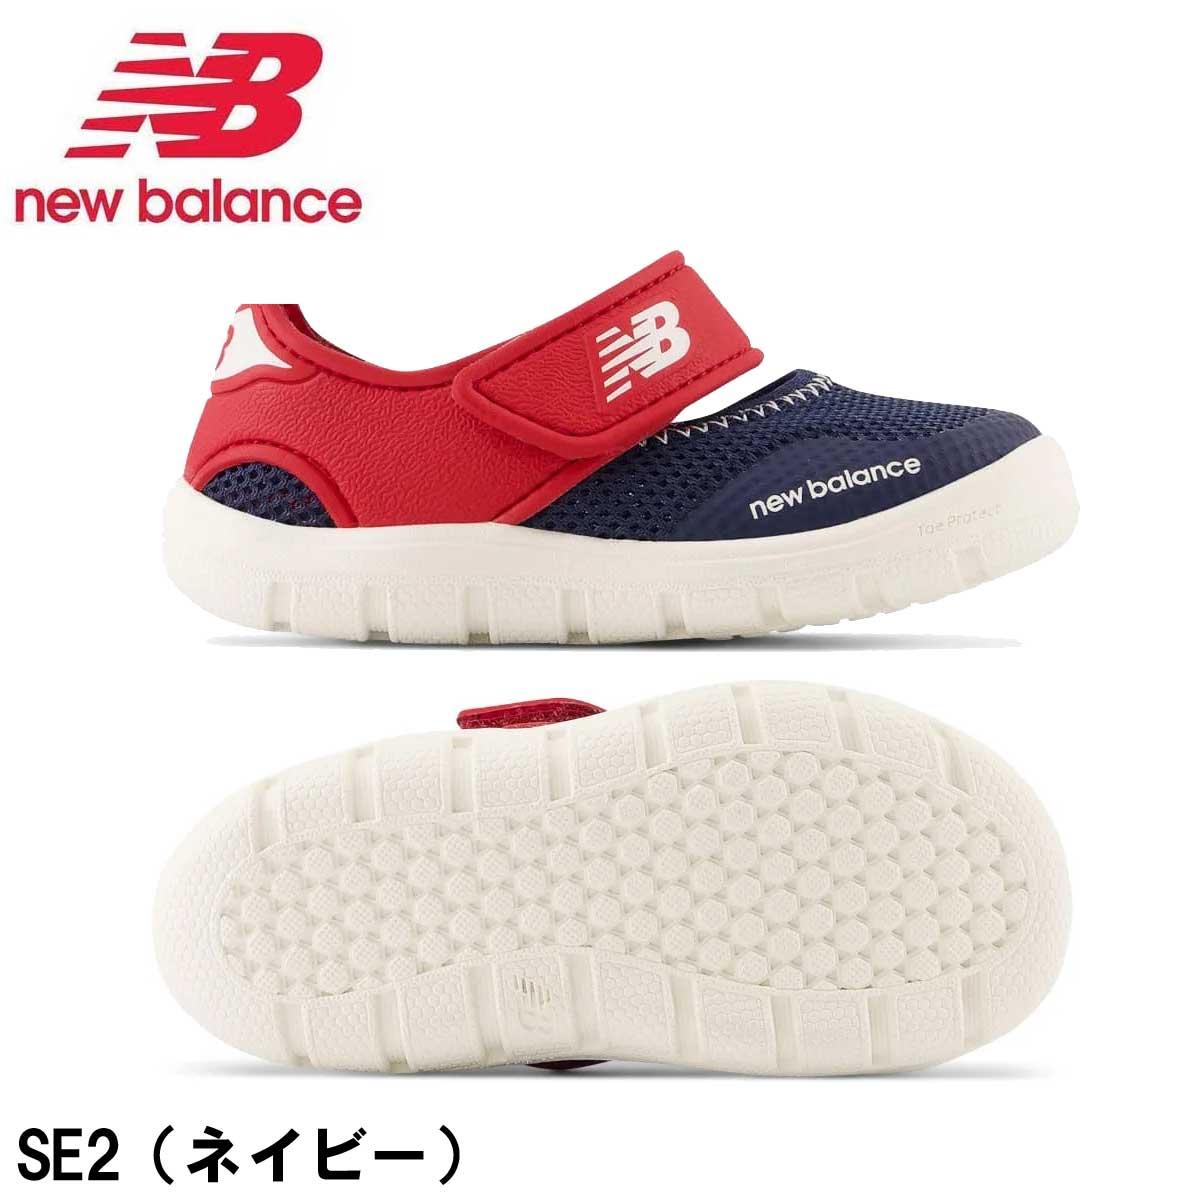 ニューバランス サンダル キッズ 208 v2 Sandal new balance NB SE2 SA2 SB2 にゅーばらんす キッズシューズ  シューズ ファーストシューズ 子供靴 SB2(ピンク) 12.0cm cutback